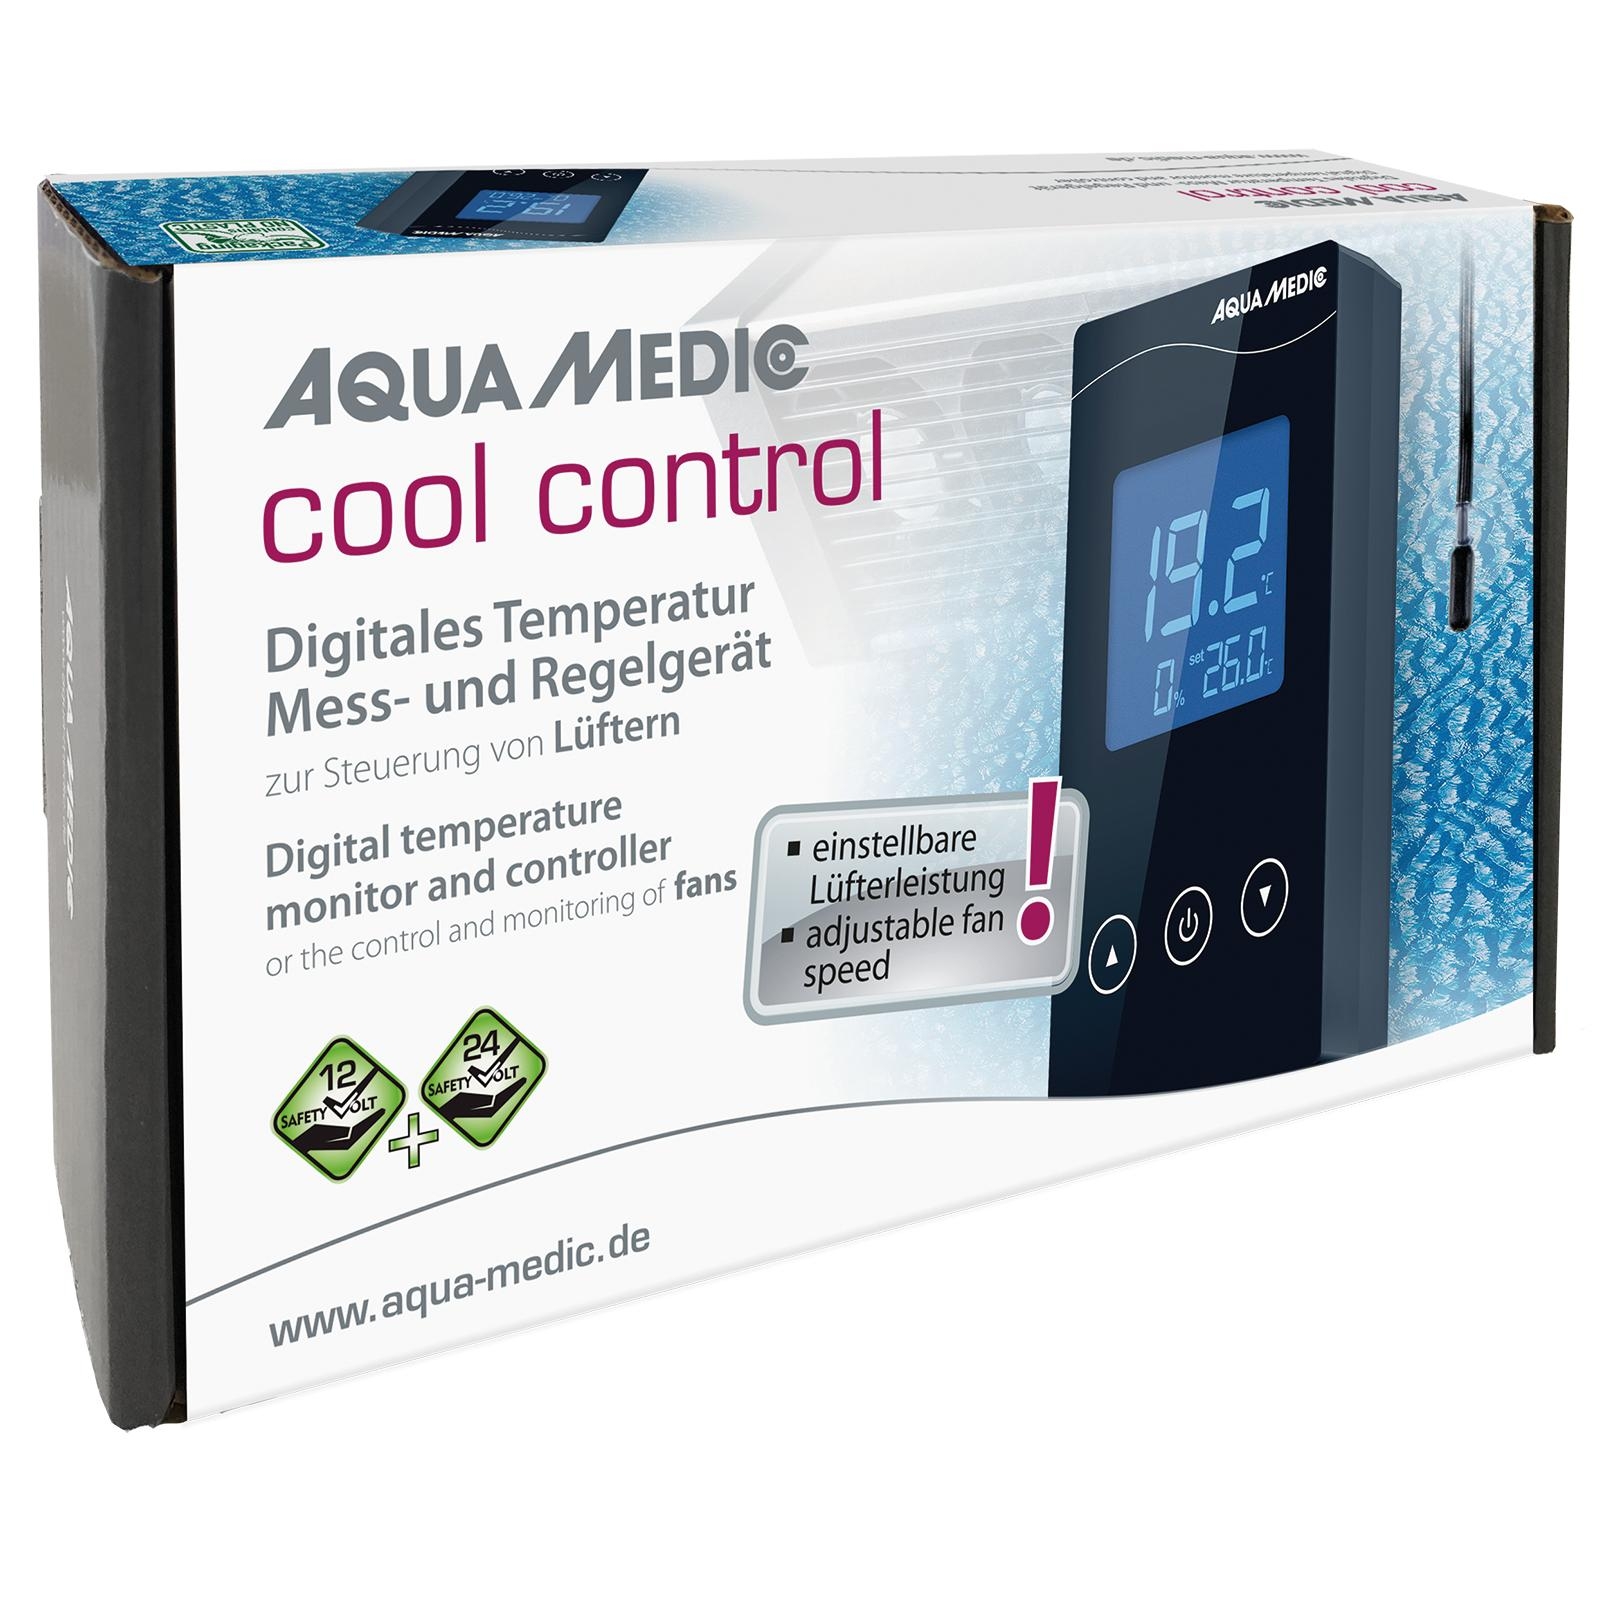 Aqua Medic- Cool control - DigitalTemperatur Mess- und Regelgerät